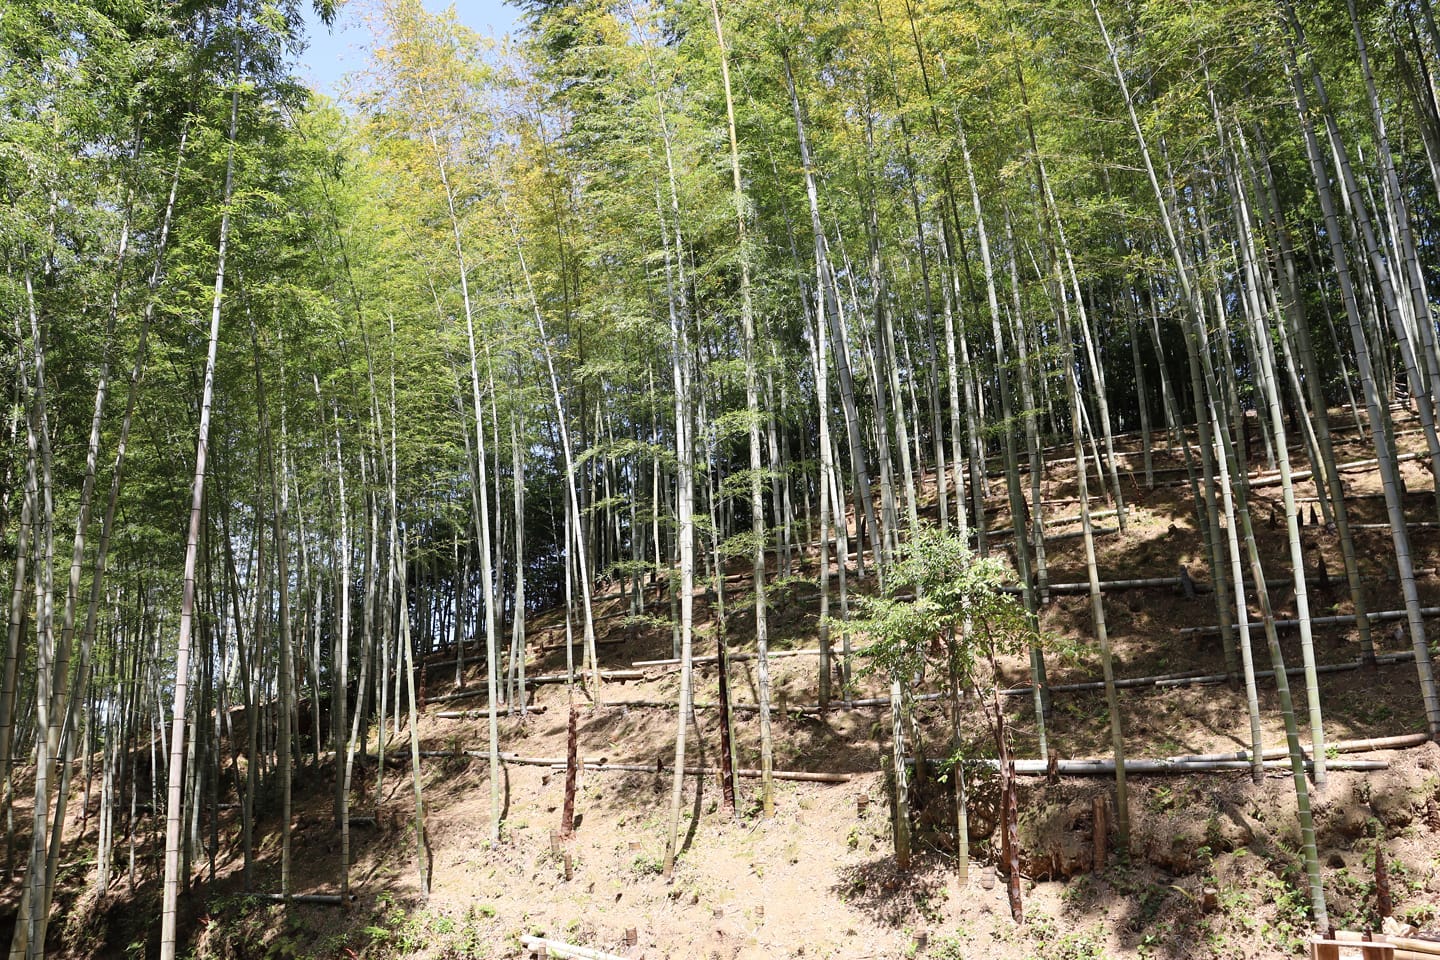 タケノコ⇒親竹暦より暑いな～と感じる日が続いていますね️どんどんでてくるタケノコ全部を収穫するかというと、そうでもありません！タケノコの一部は、掘らずに成長させて「竹」に！タケノコは、「竹の子」とも表記されるまさに竹の子ども大きくなると竹になります🤩大きくなった竹が、親となりまた次のタケノコが生えてくる今シーズンもまだまだタケノコ収穫は続きますが、竹に成長していくタケノコを見てると来シーズン以降も楽しみになってきます#たけのこ #タケノコ #たけのこ販売 #たけのこ生産 #竹林 #竹林整備 #里山 #竹 #青竹 #親竹 #阿波たけのこ農園 #筍姫